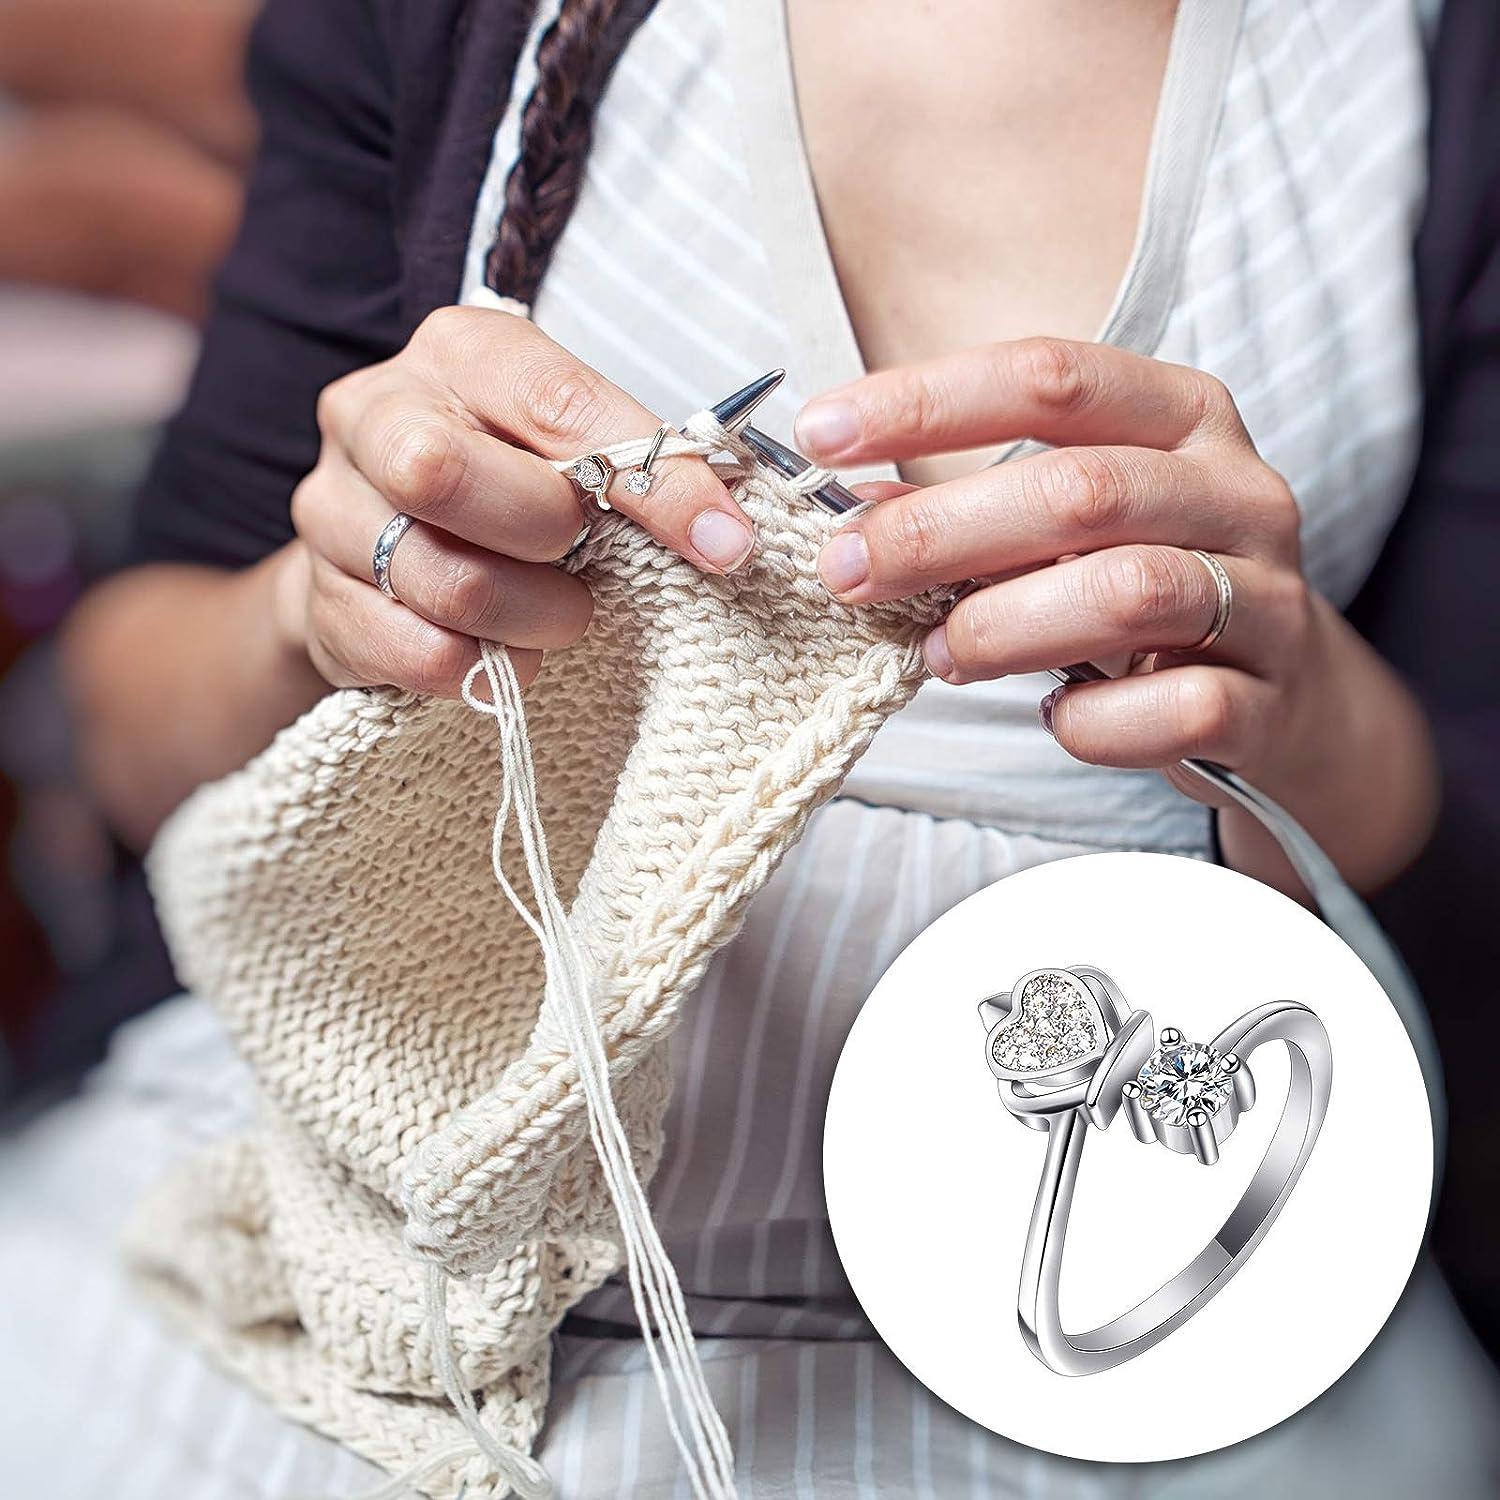  2 Pcs Adjustable Crochet Ring for Finger, Crochet Tension Ring  for Braided Knitting Ring Yarn Tension Rings for Crochet Knitting  Accessories Gift for Women Grandma, 2 Styles Gold